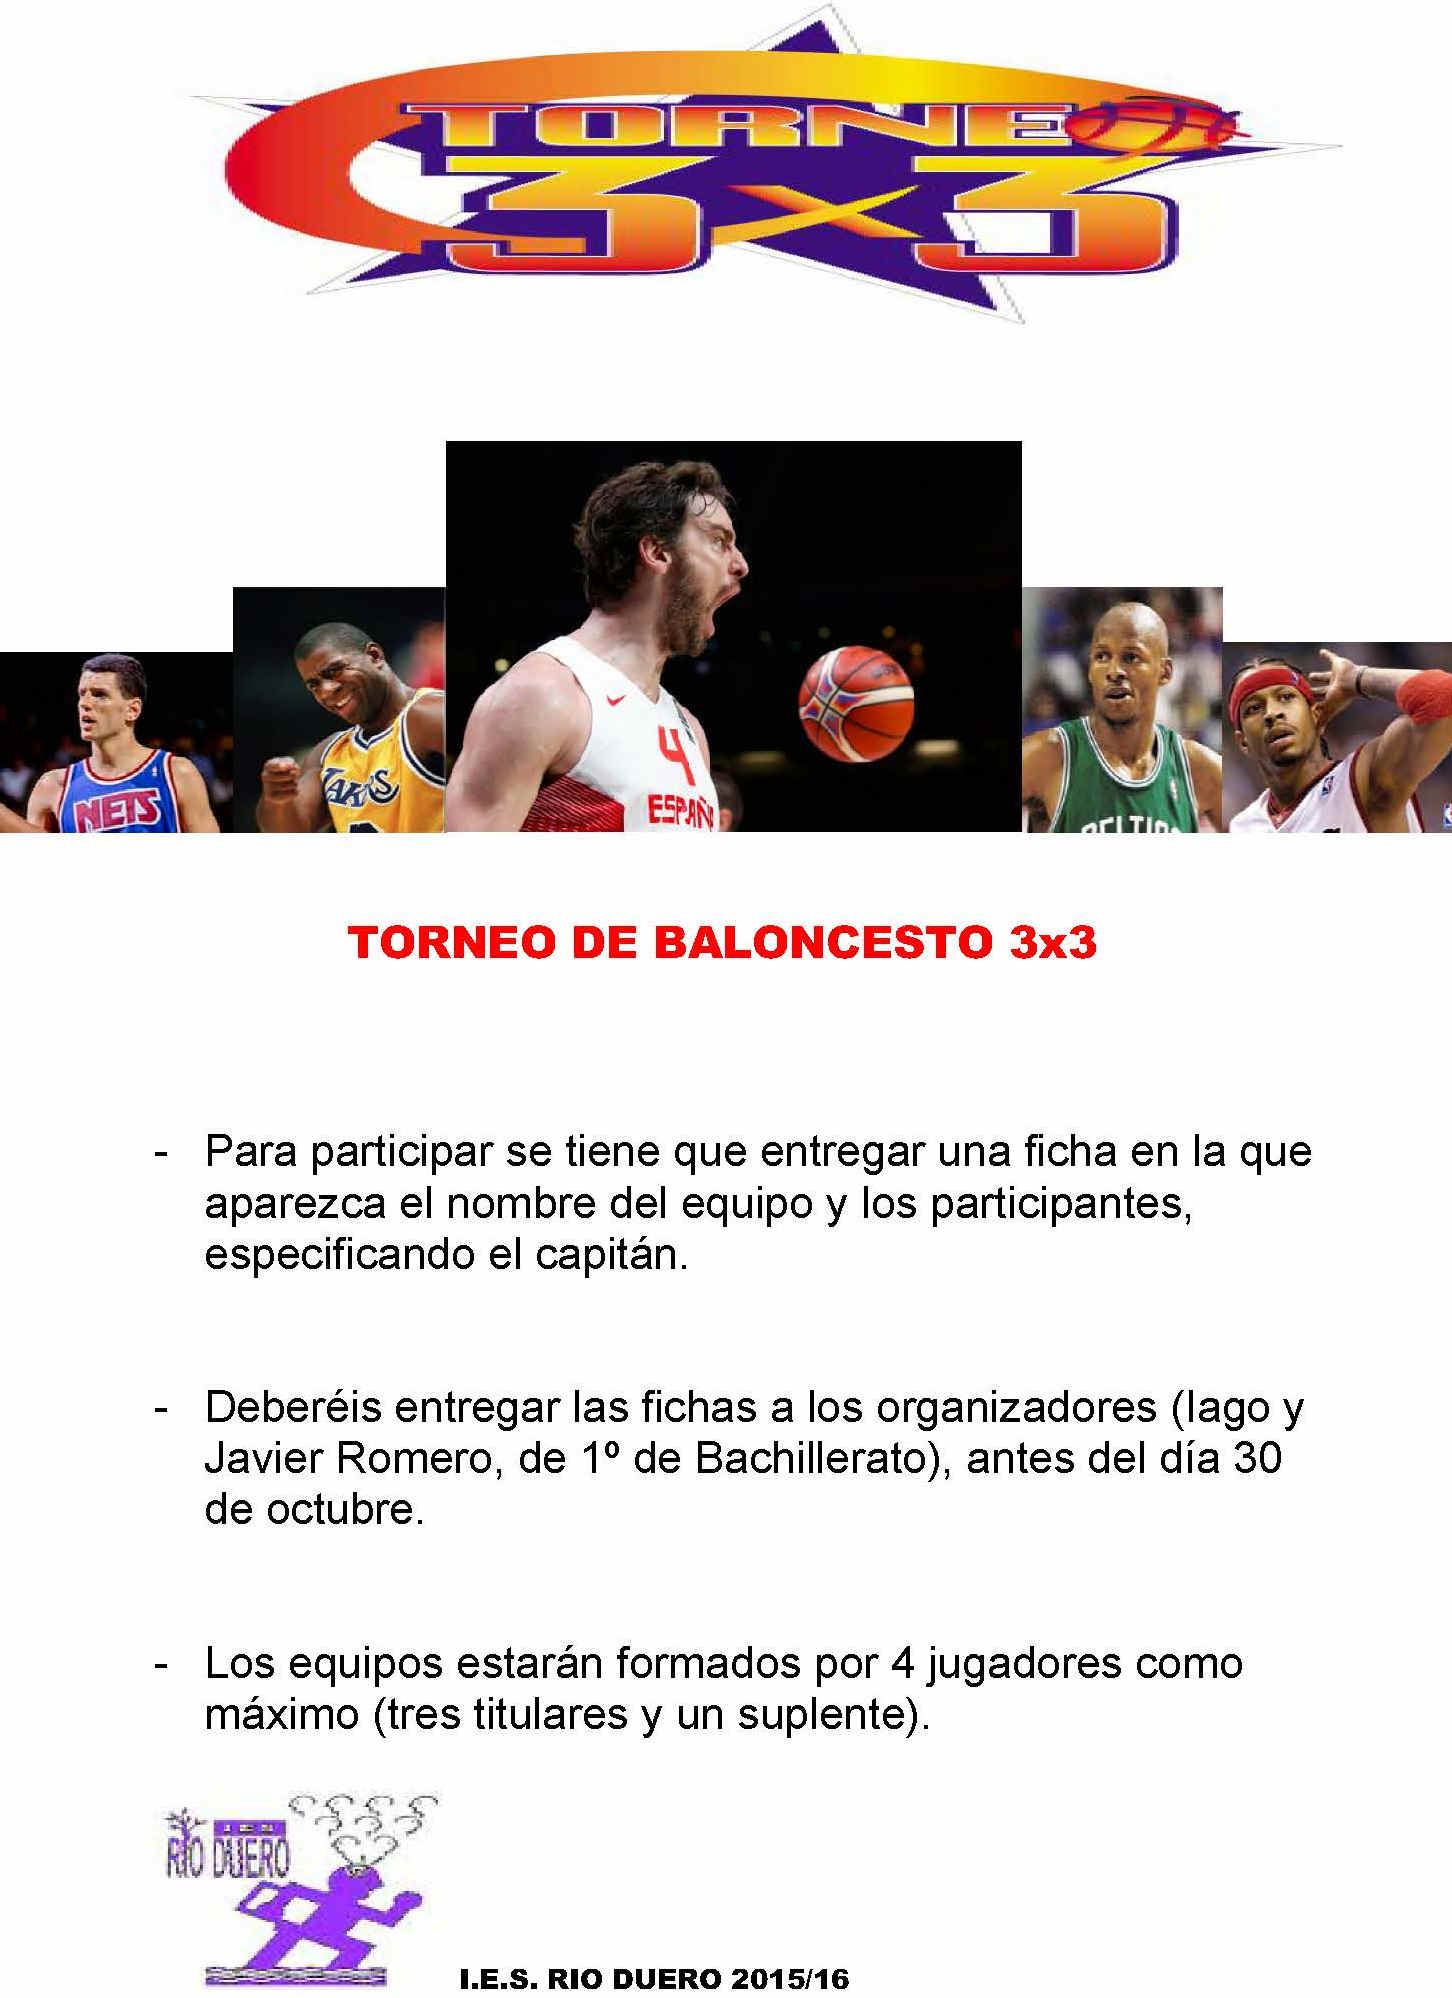 TORNEO DE BALONCESTO 2015-16